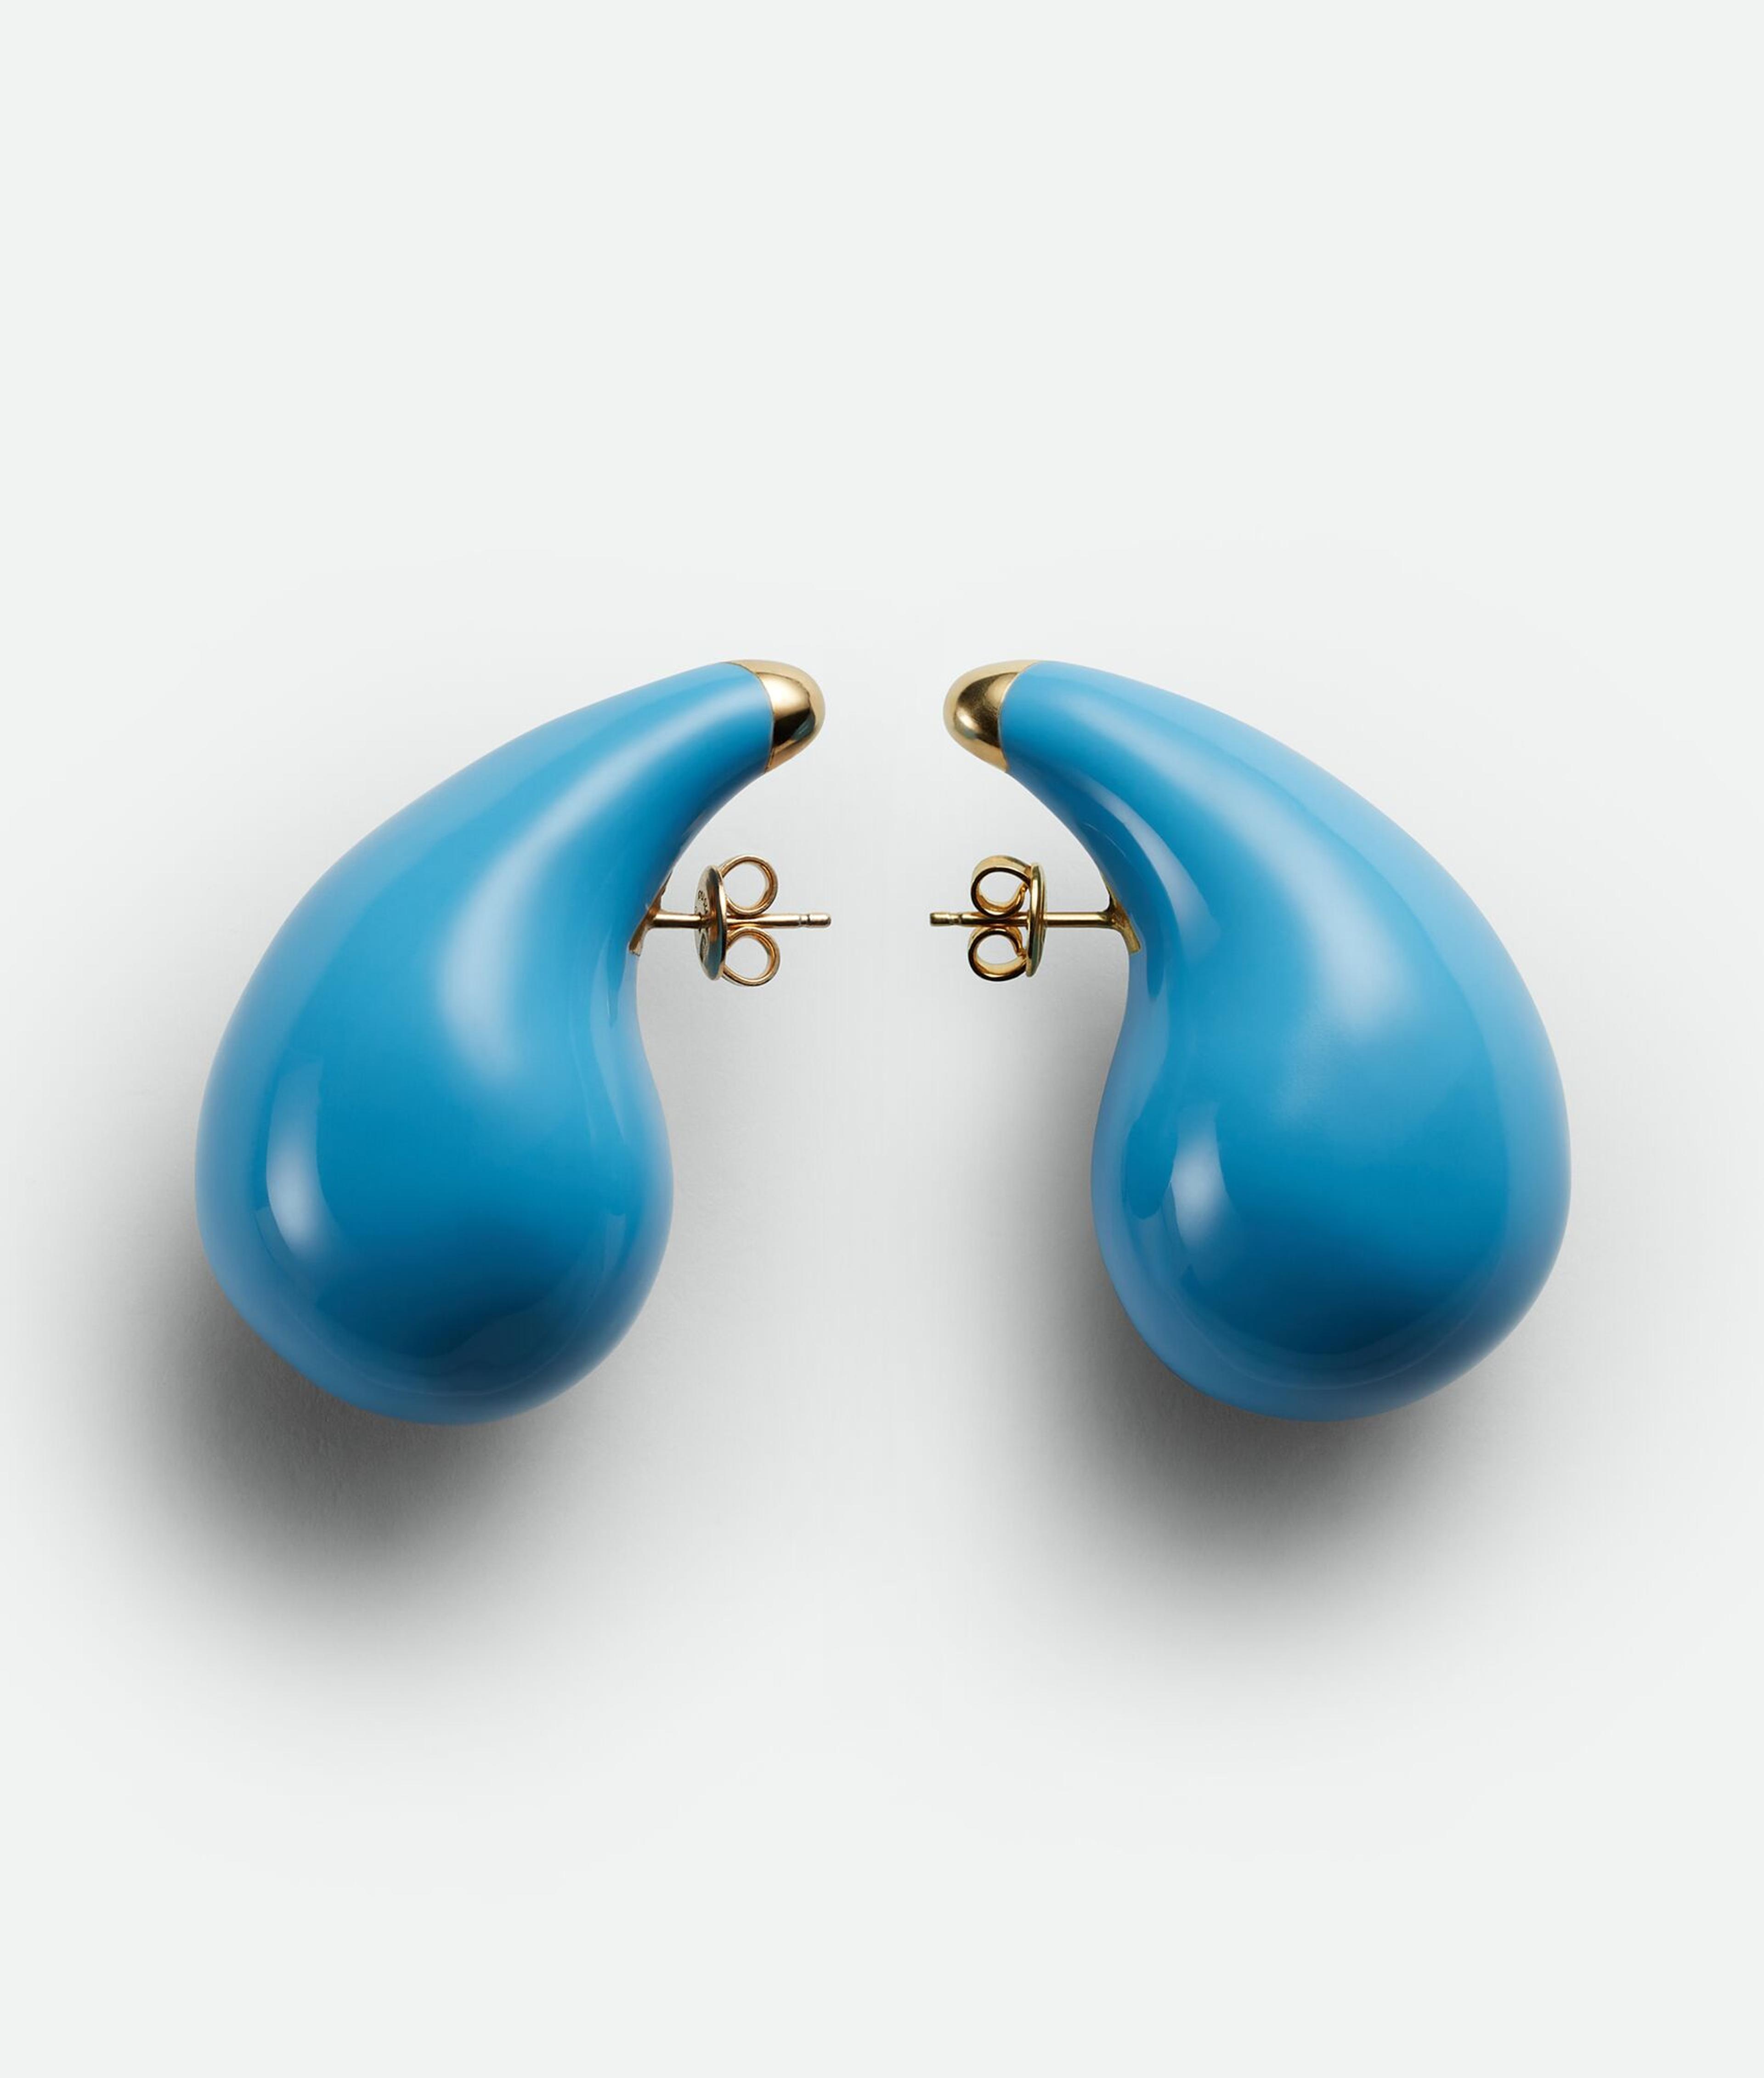 Bottega Veneta® Women's Drop Earrings in Pale Blue. Shop online now.